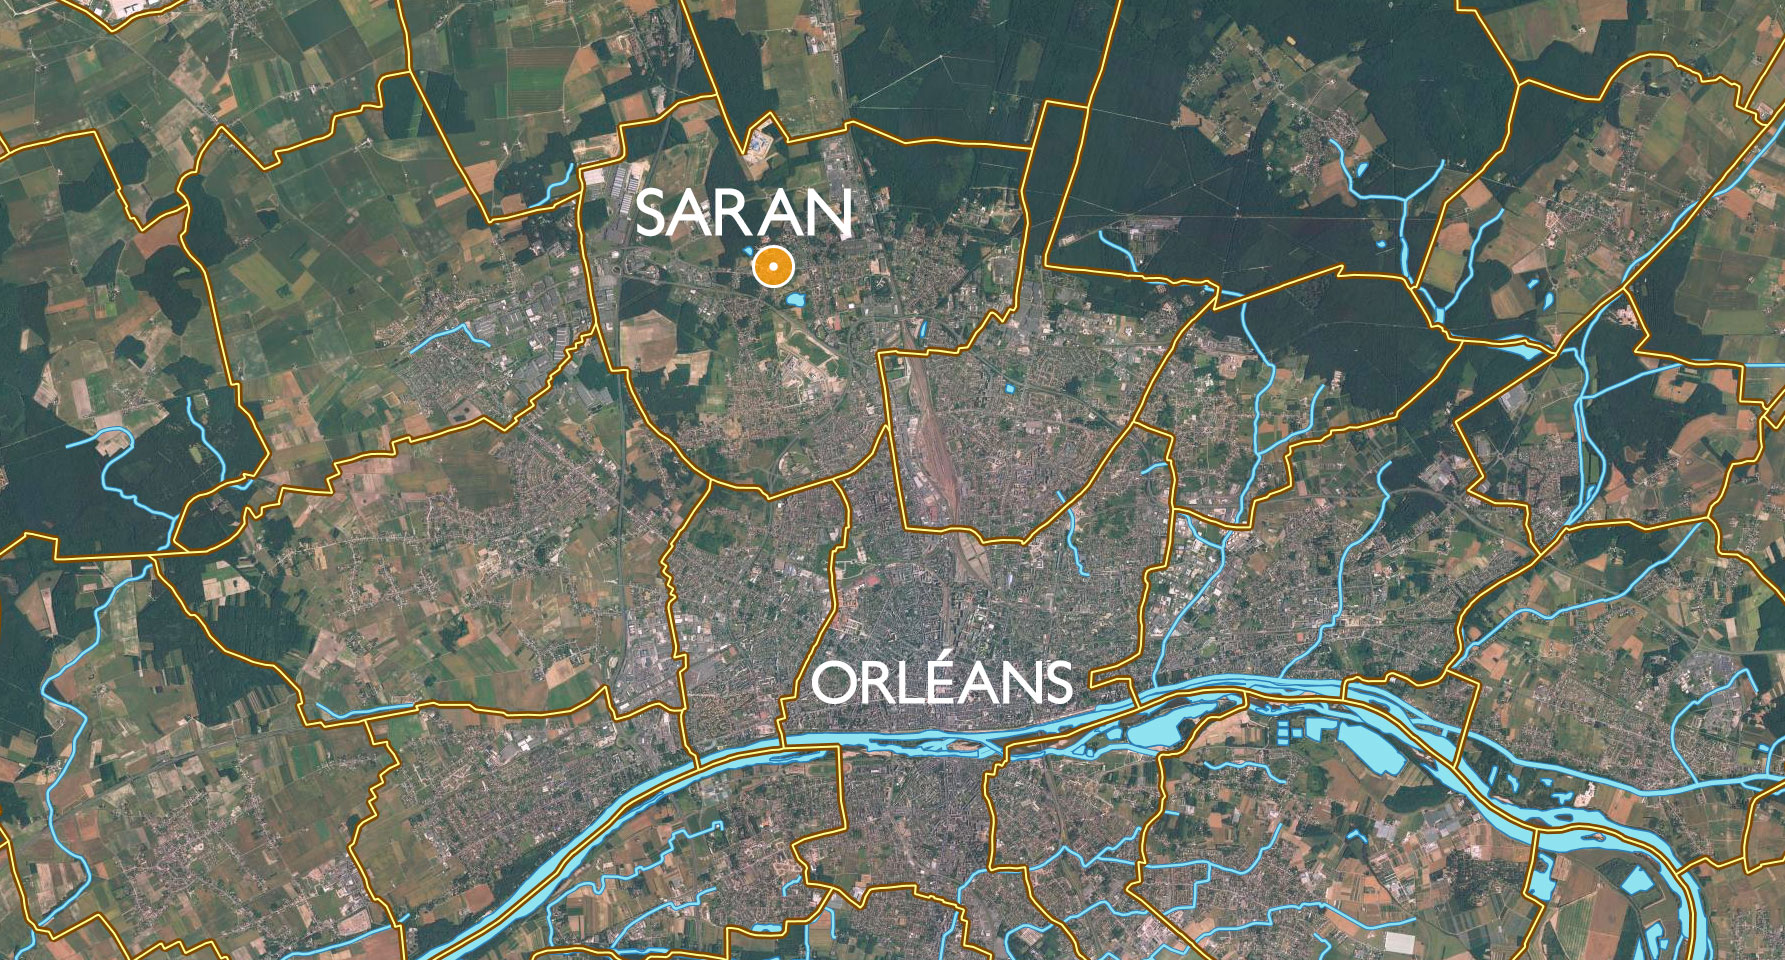 Vue aérienne de Saran et Orléans